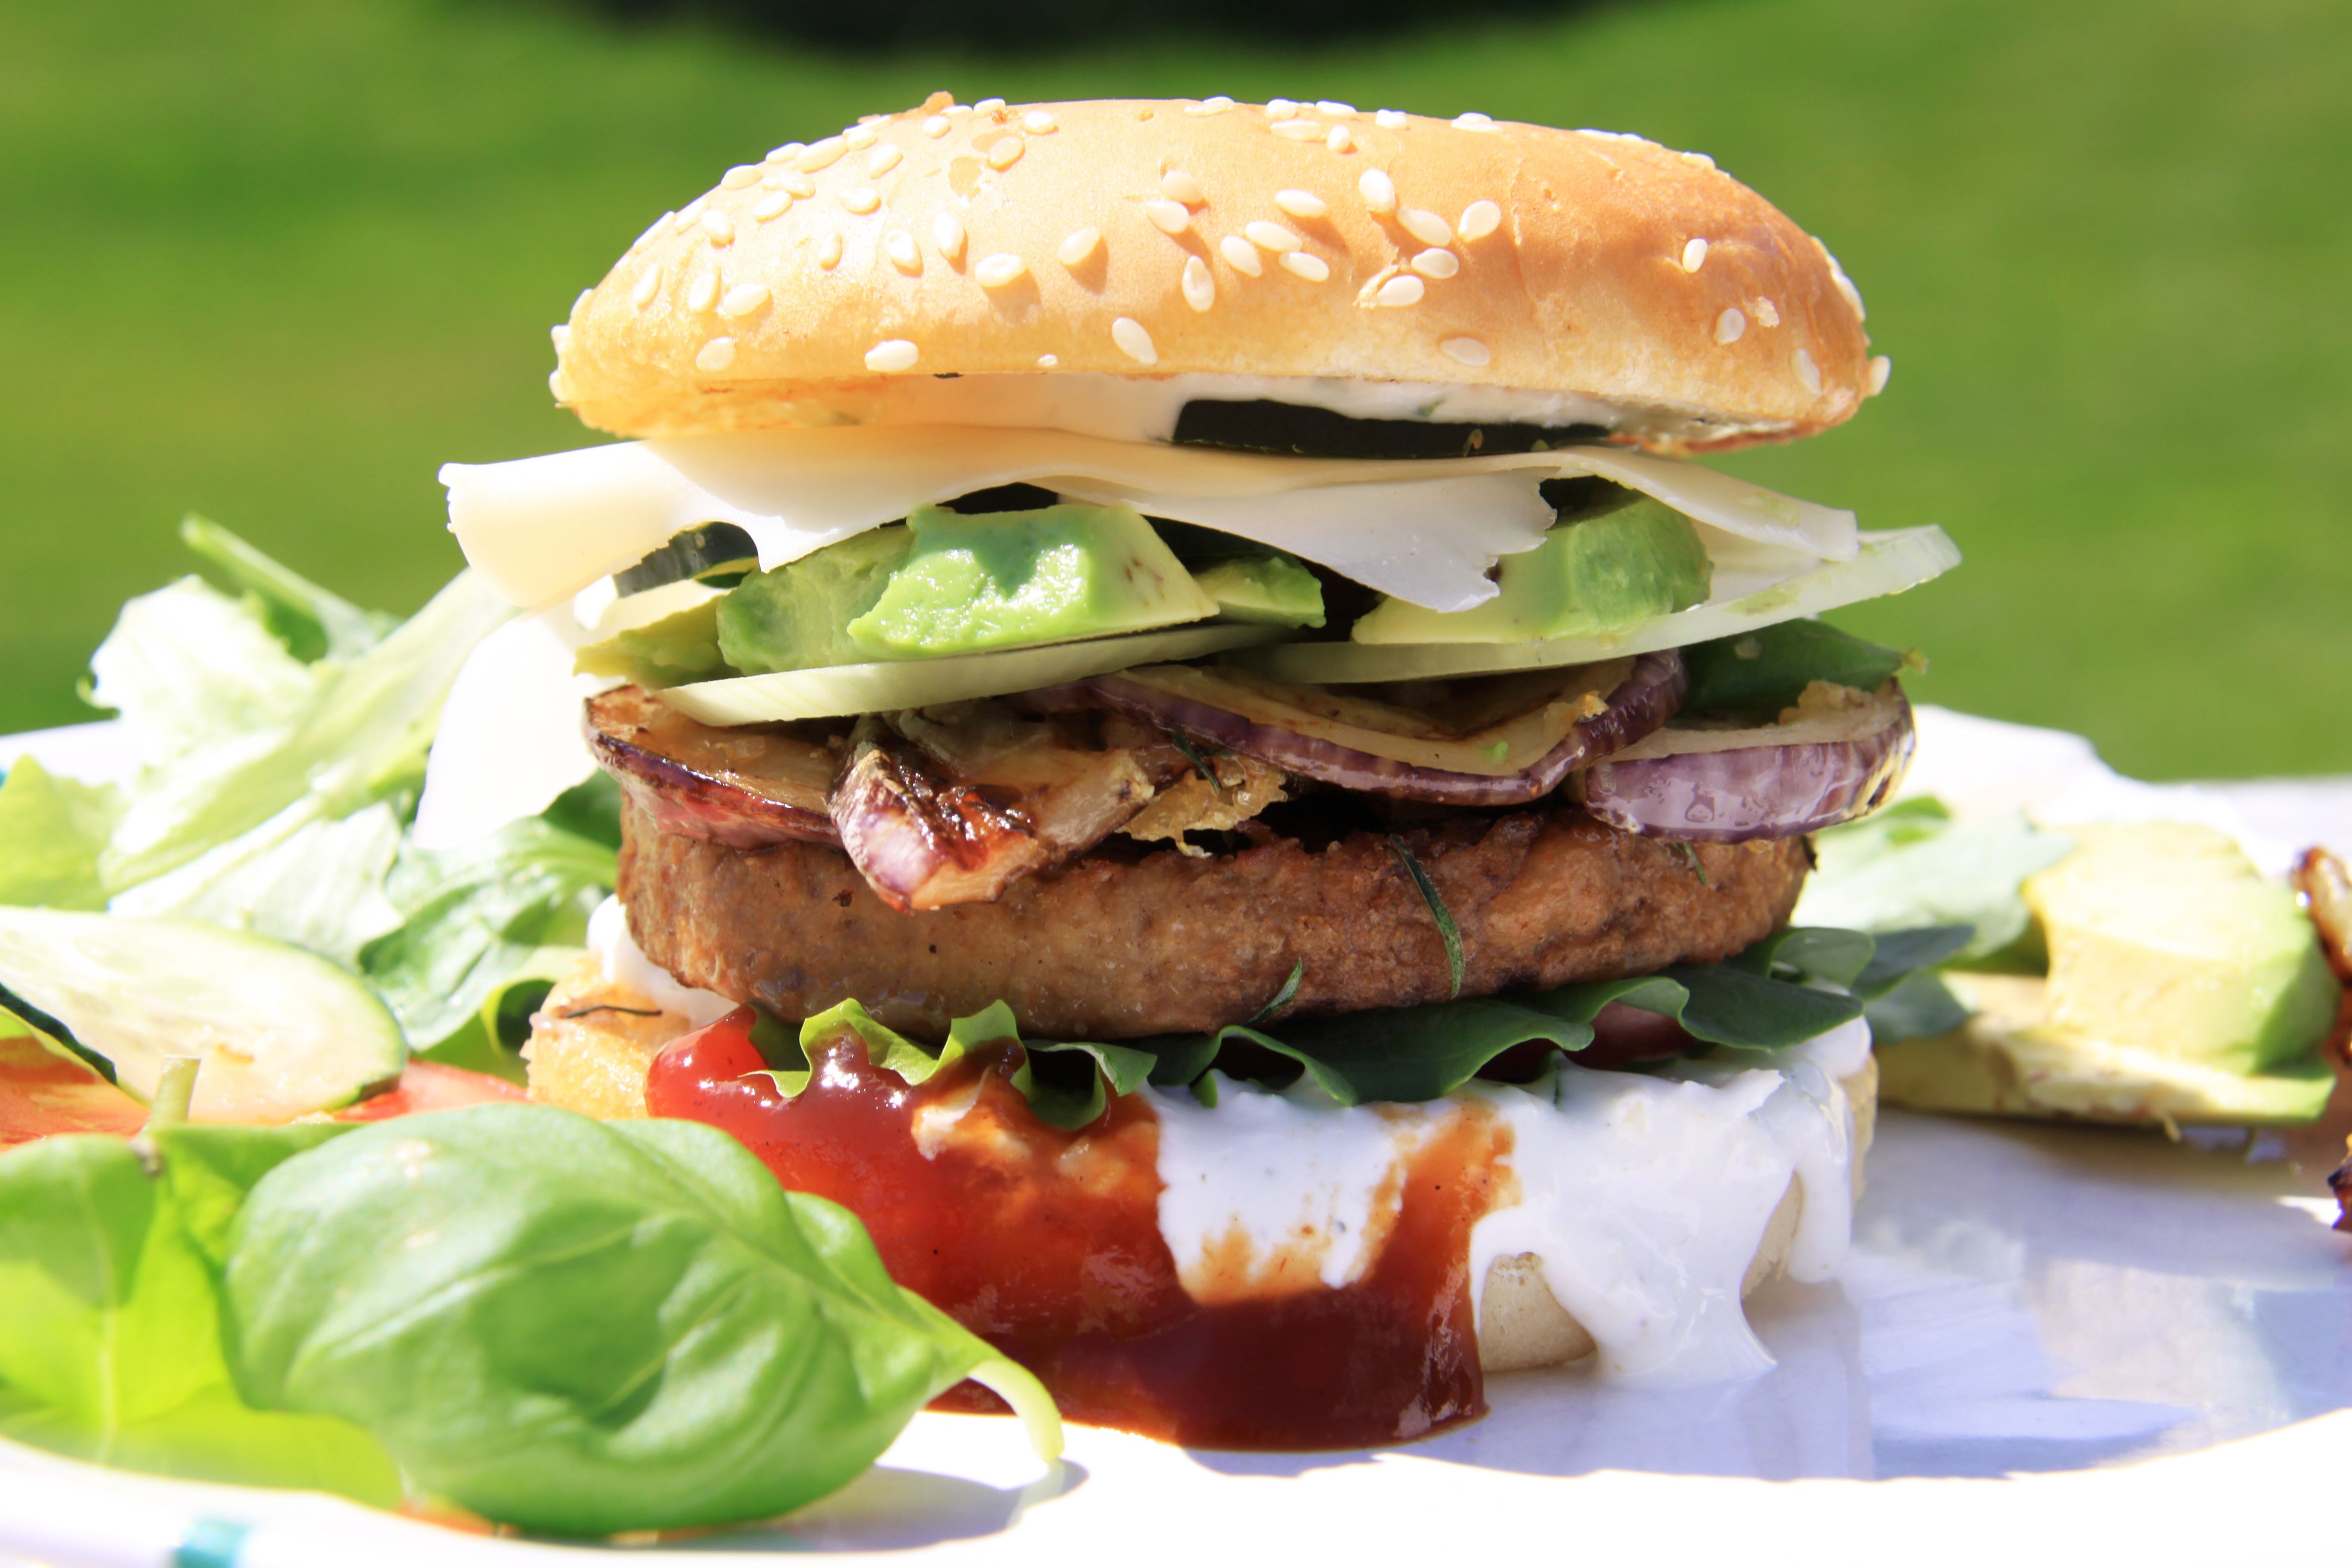 vegetarische hamburger supermarkt gezond zout eiwit ijzer vitamine b12 consumentenvond